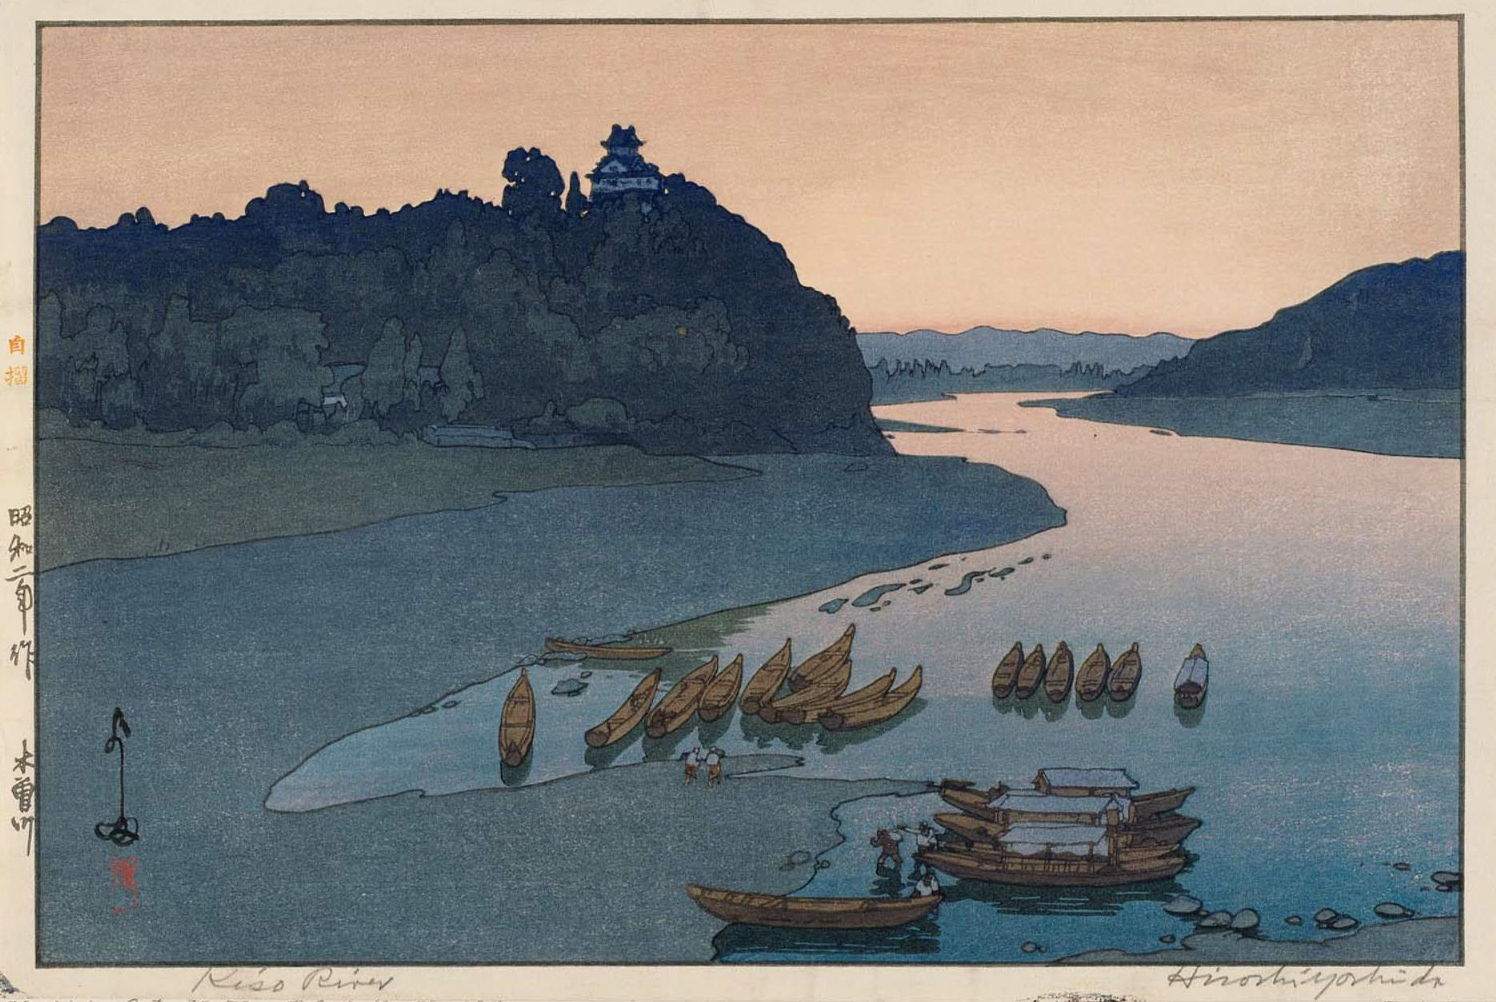 Hiroshi Yoshida “Kiso River” 1927 woodblock print